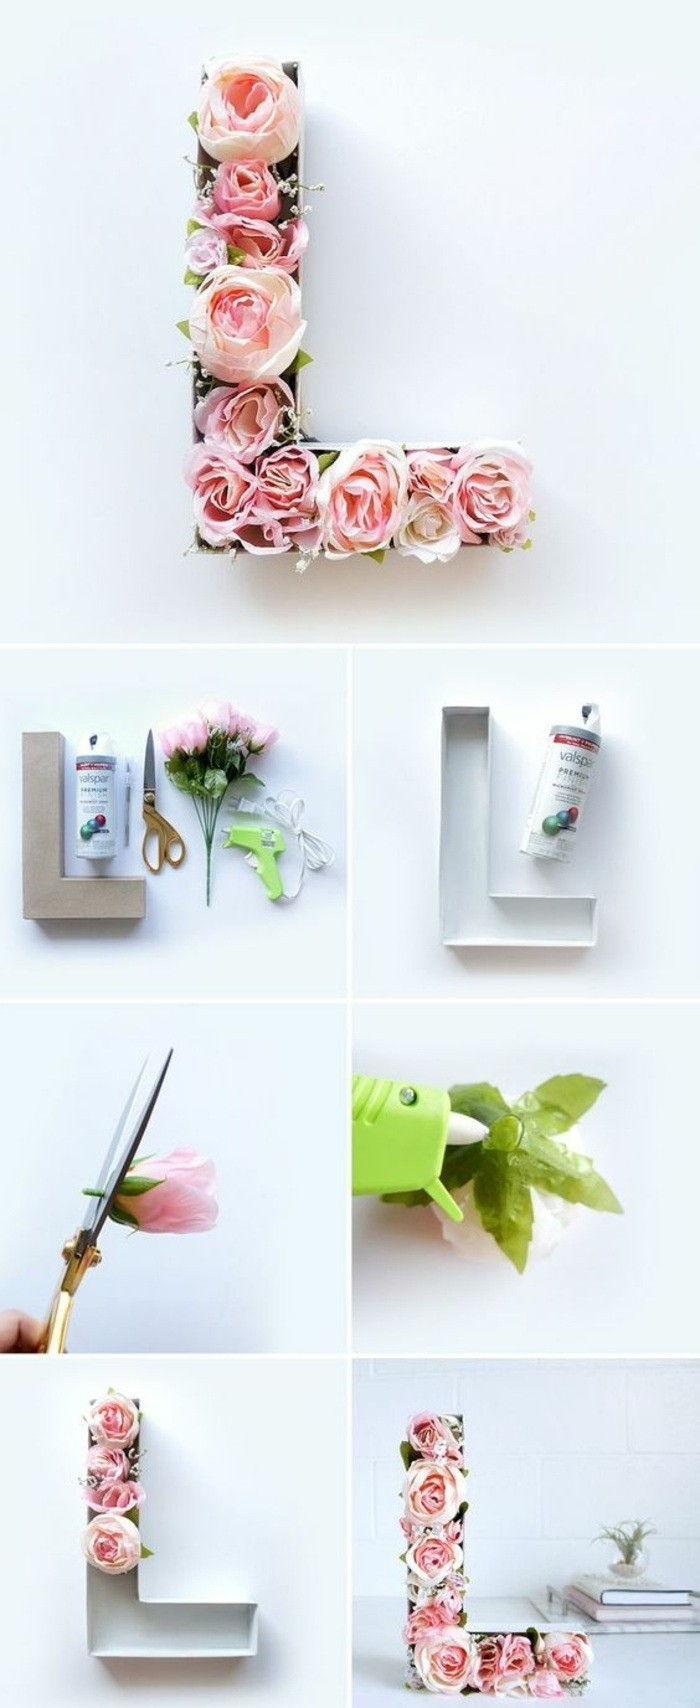 Wanddeko-selv-making fruhlingsdeko-tinker-brev-til-pynte-roser